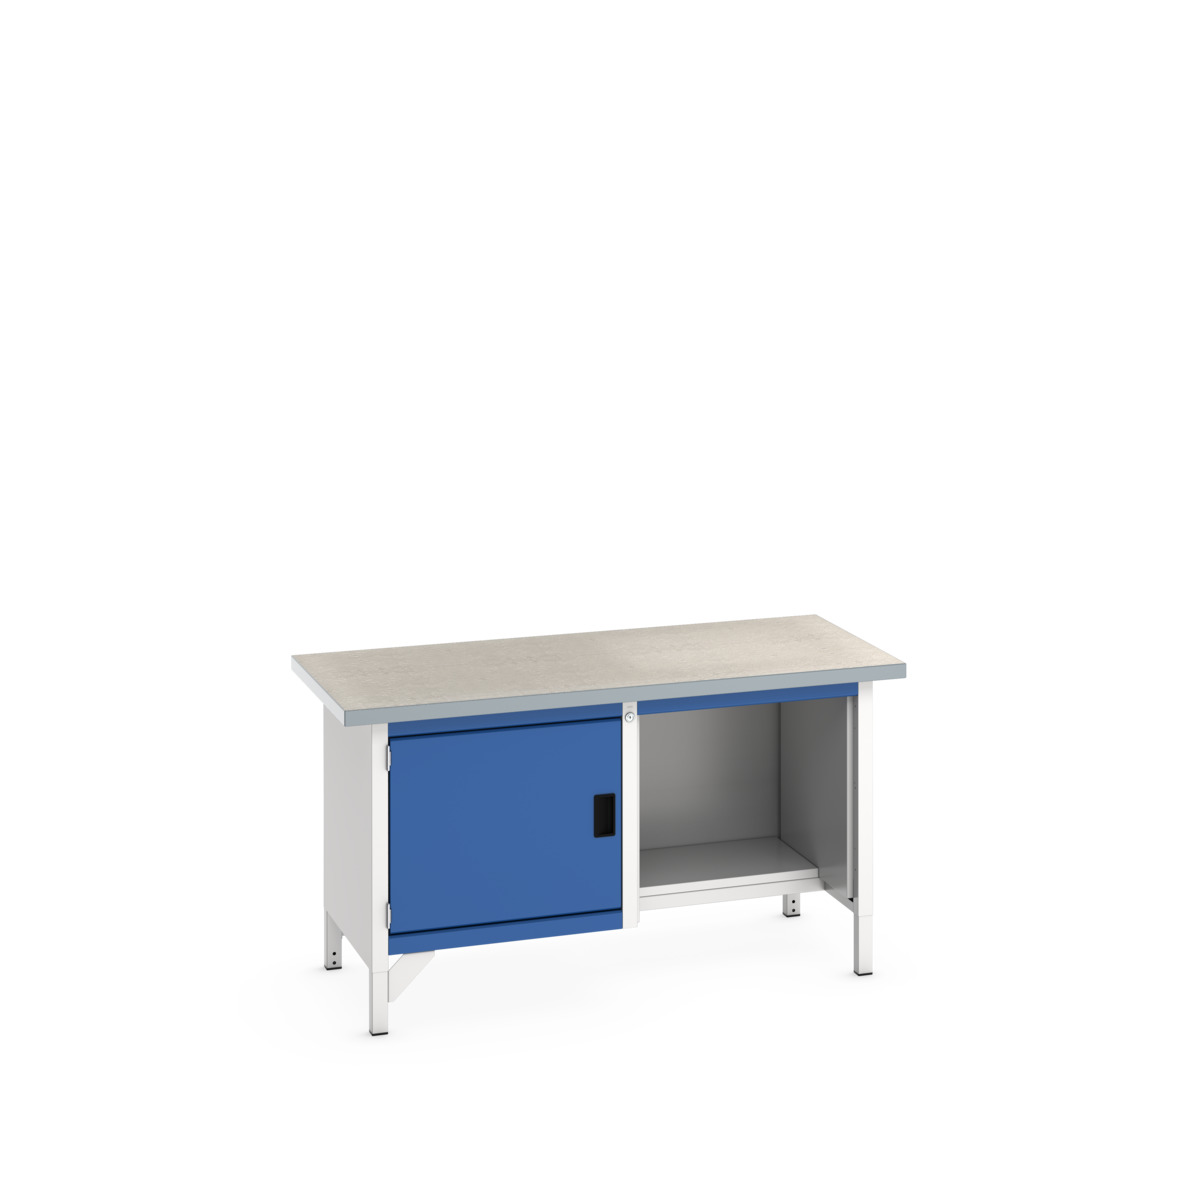 41002036.11V - cubio storage bench (lino)